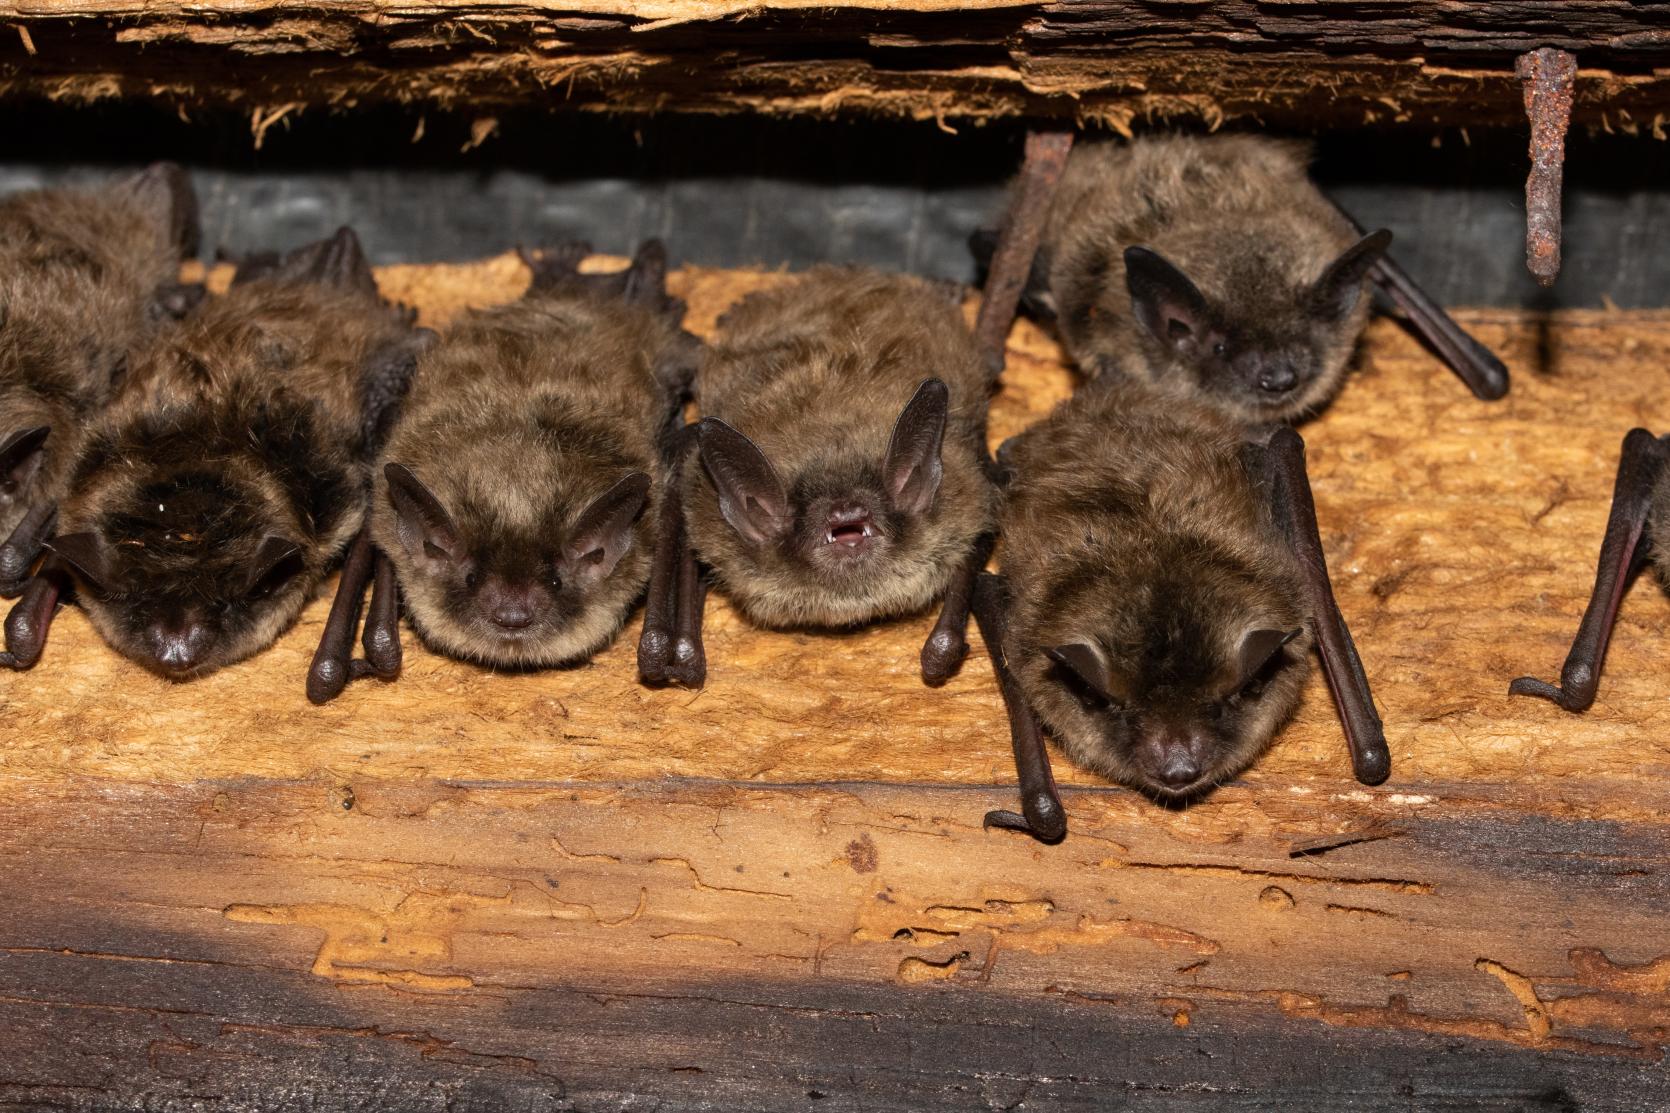 Little brown bats